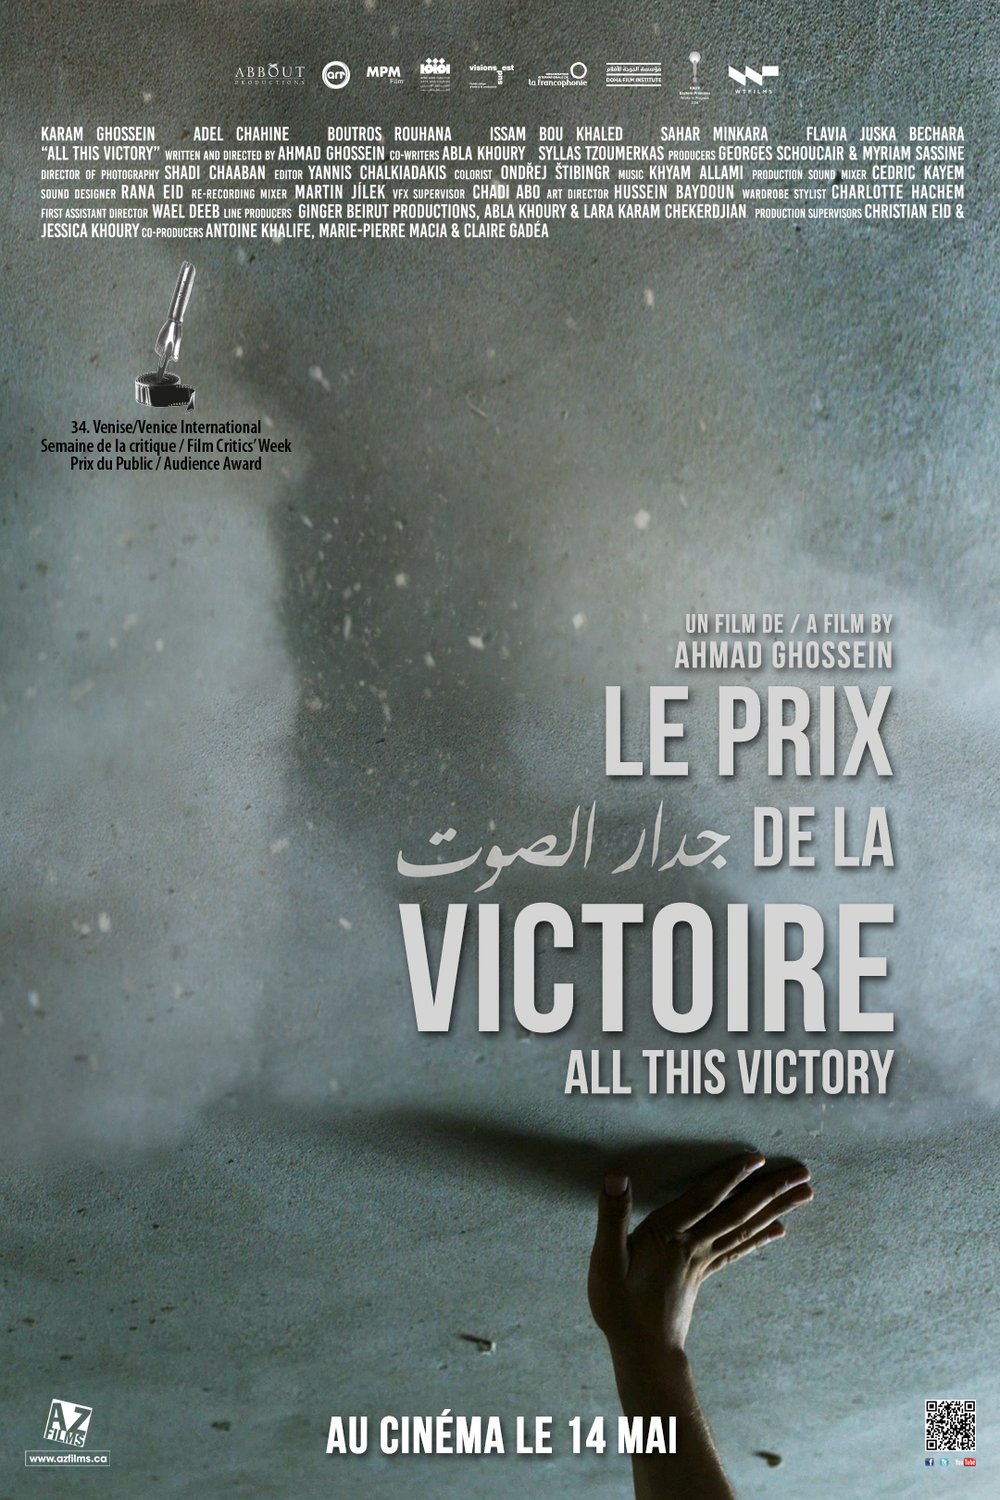 L'affiche du film Le prix de la victoire